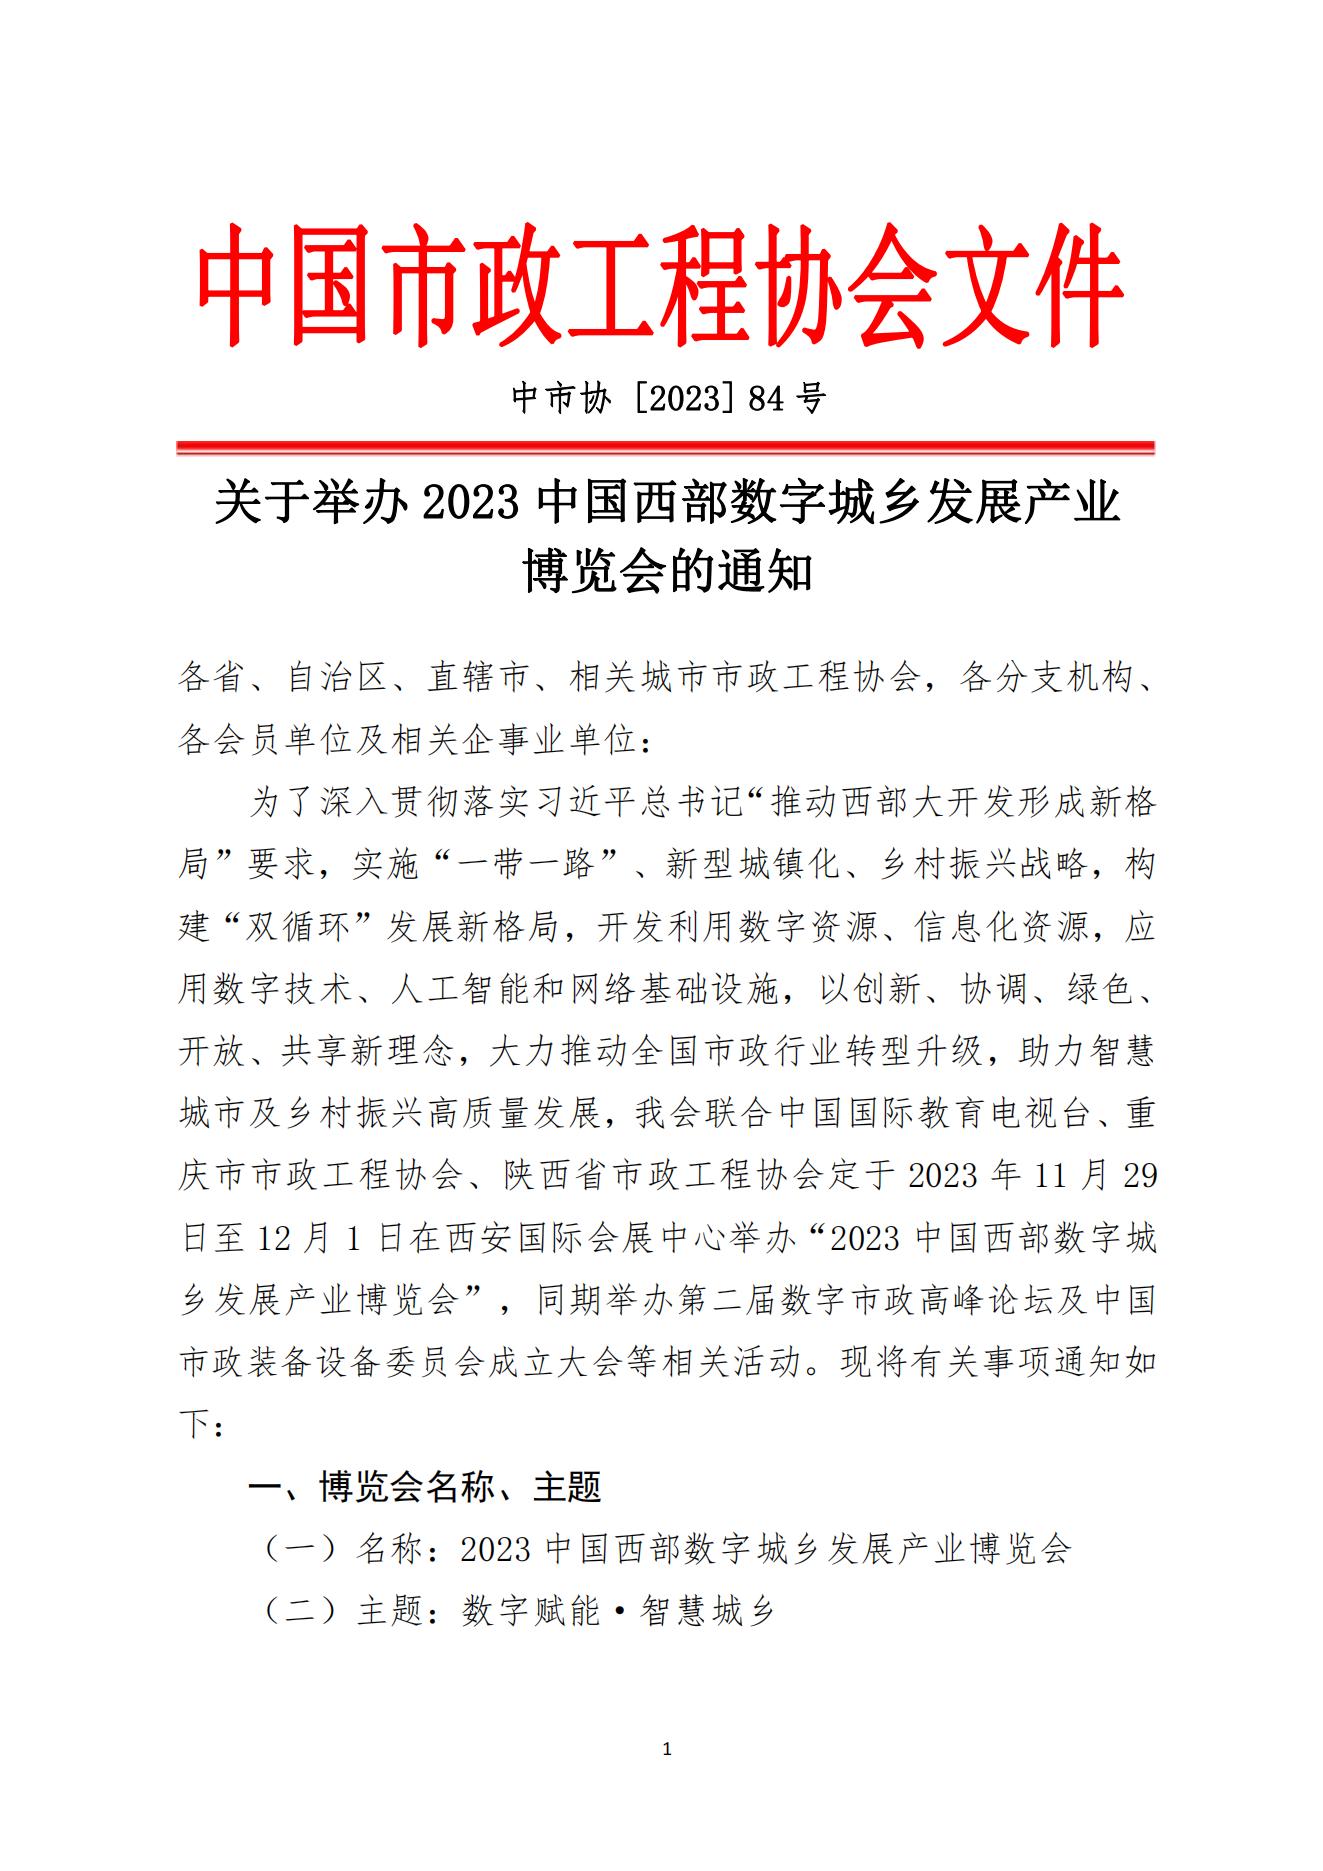 中国市政工程协会关于举办2023中国西部数字城乡发展产业博览会的通知11.9(1)_00.jpg